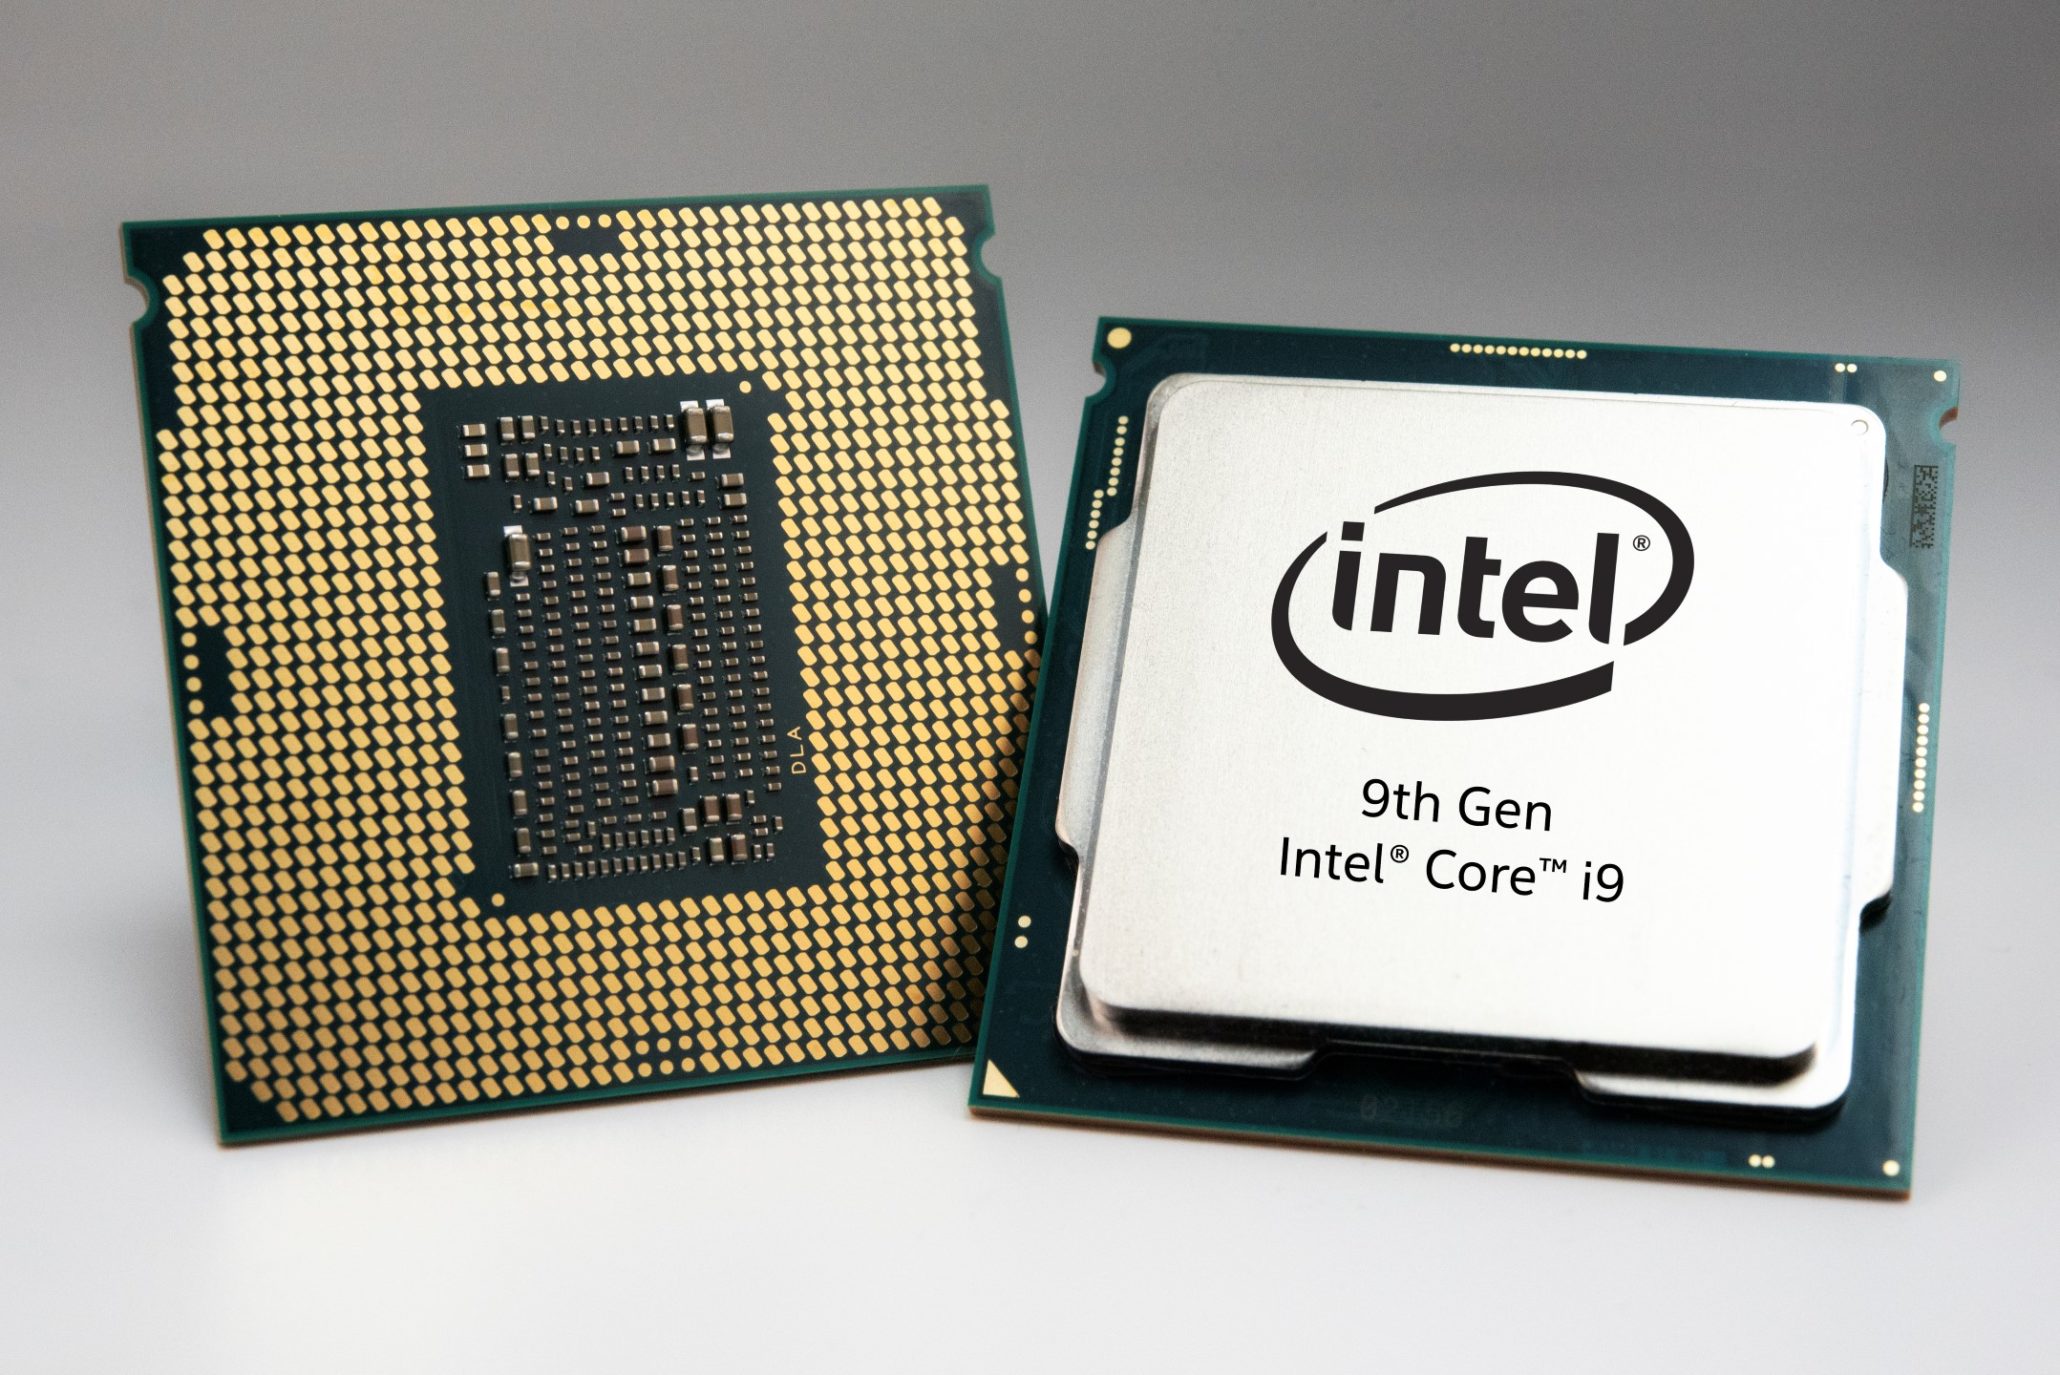 intel core processor comparison